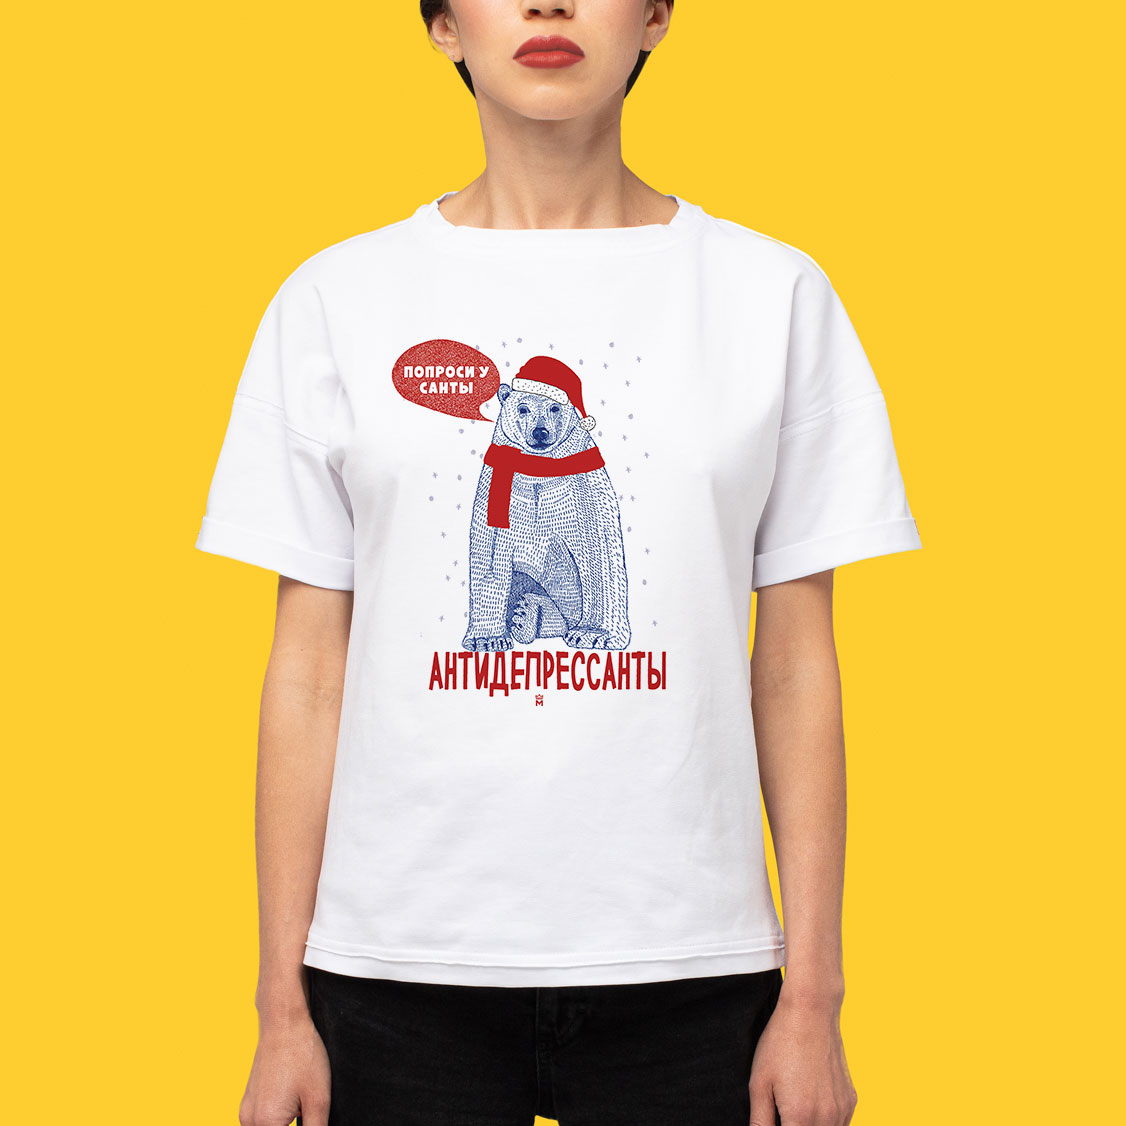 МАЙКАДЖЕКСОН - Попроси у Санты антидепрессанты (новогодняя футболка)